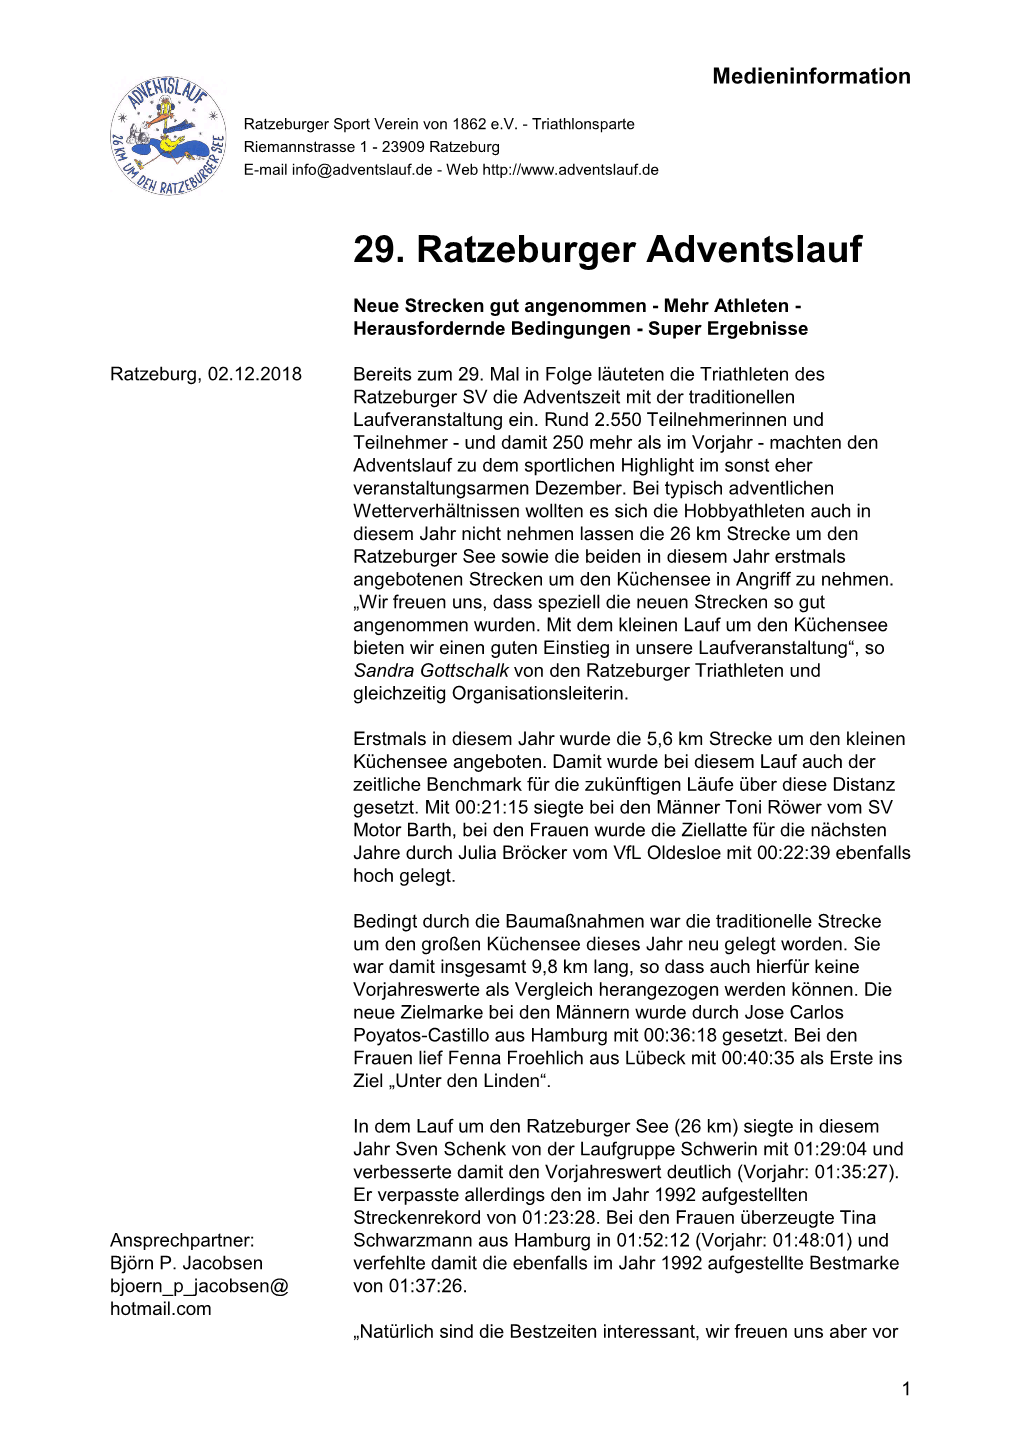 29. Ratzeburger Adventslauf: Neue Strecken Gut Angenommen